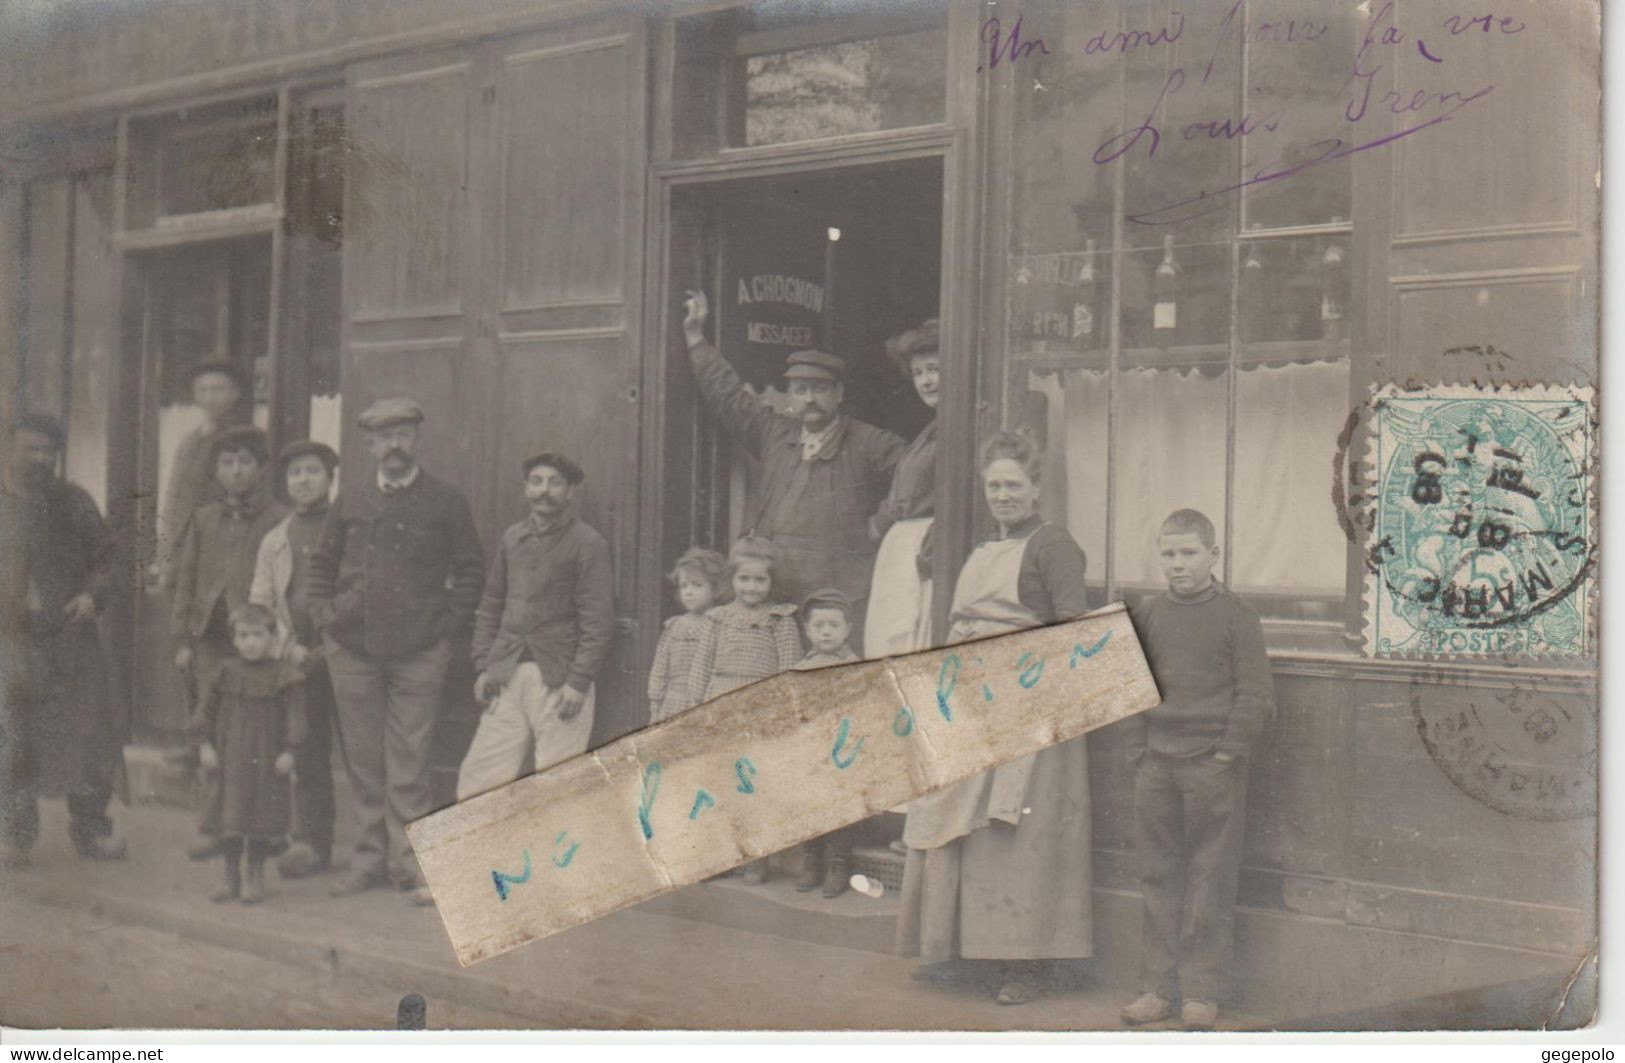 VILLIERS Sur MARNE - Café Maison A.CHOGNON - Messager   ( Carte Photo ) - Villiers Sur Marne